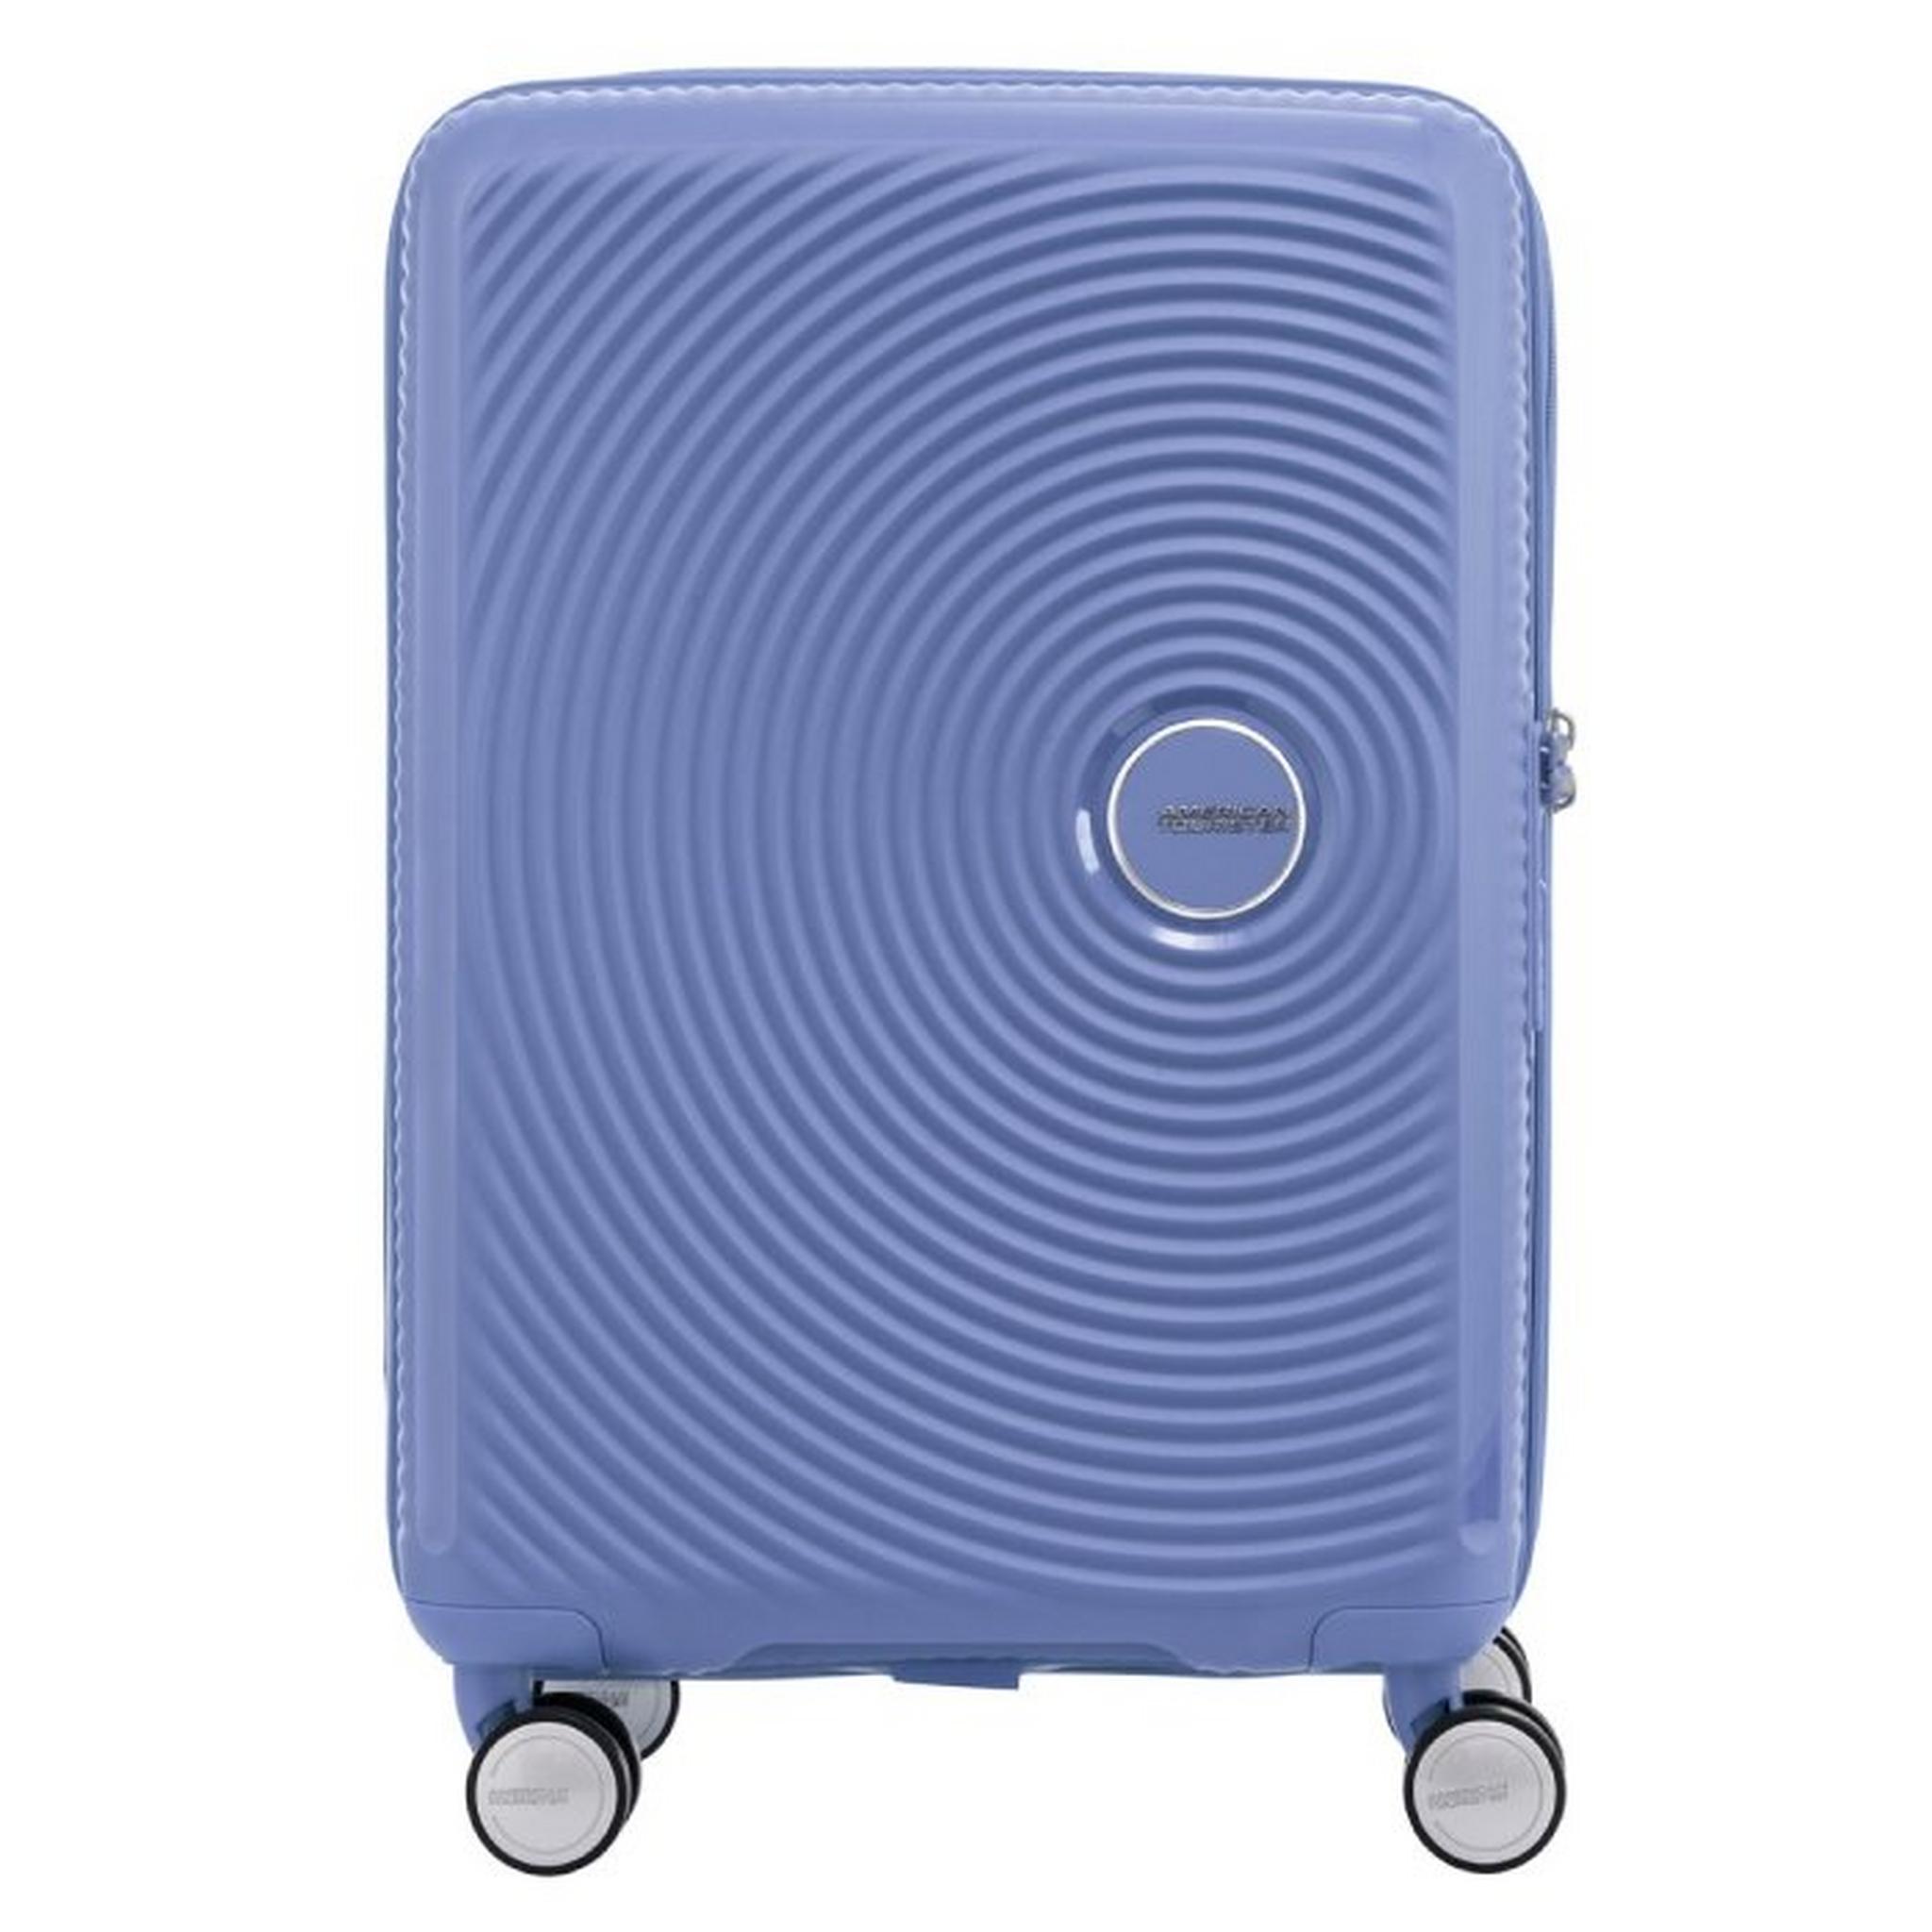 حقيبة السفر الصلبة كوريو من أمريكان توريستر ٥٥ سم - أزرق